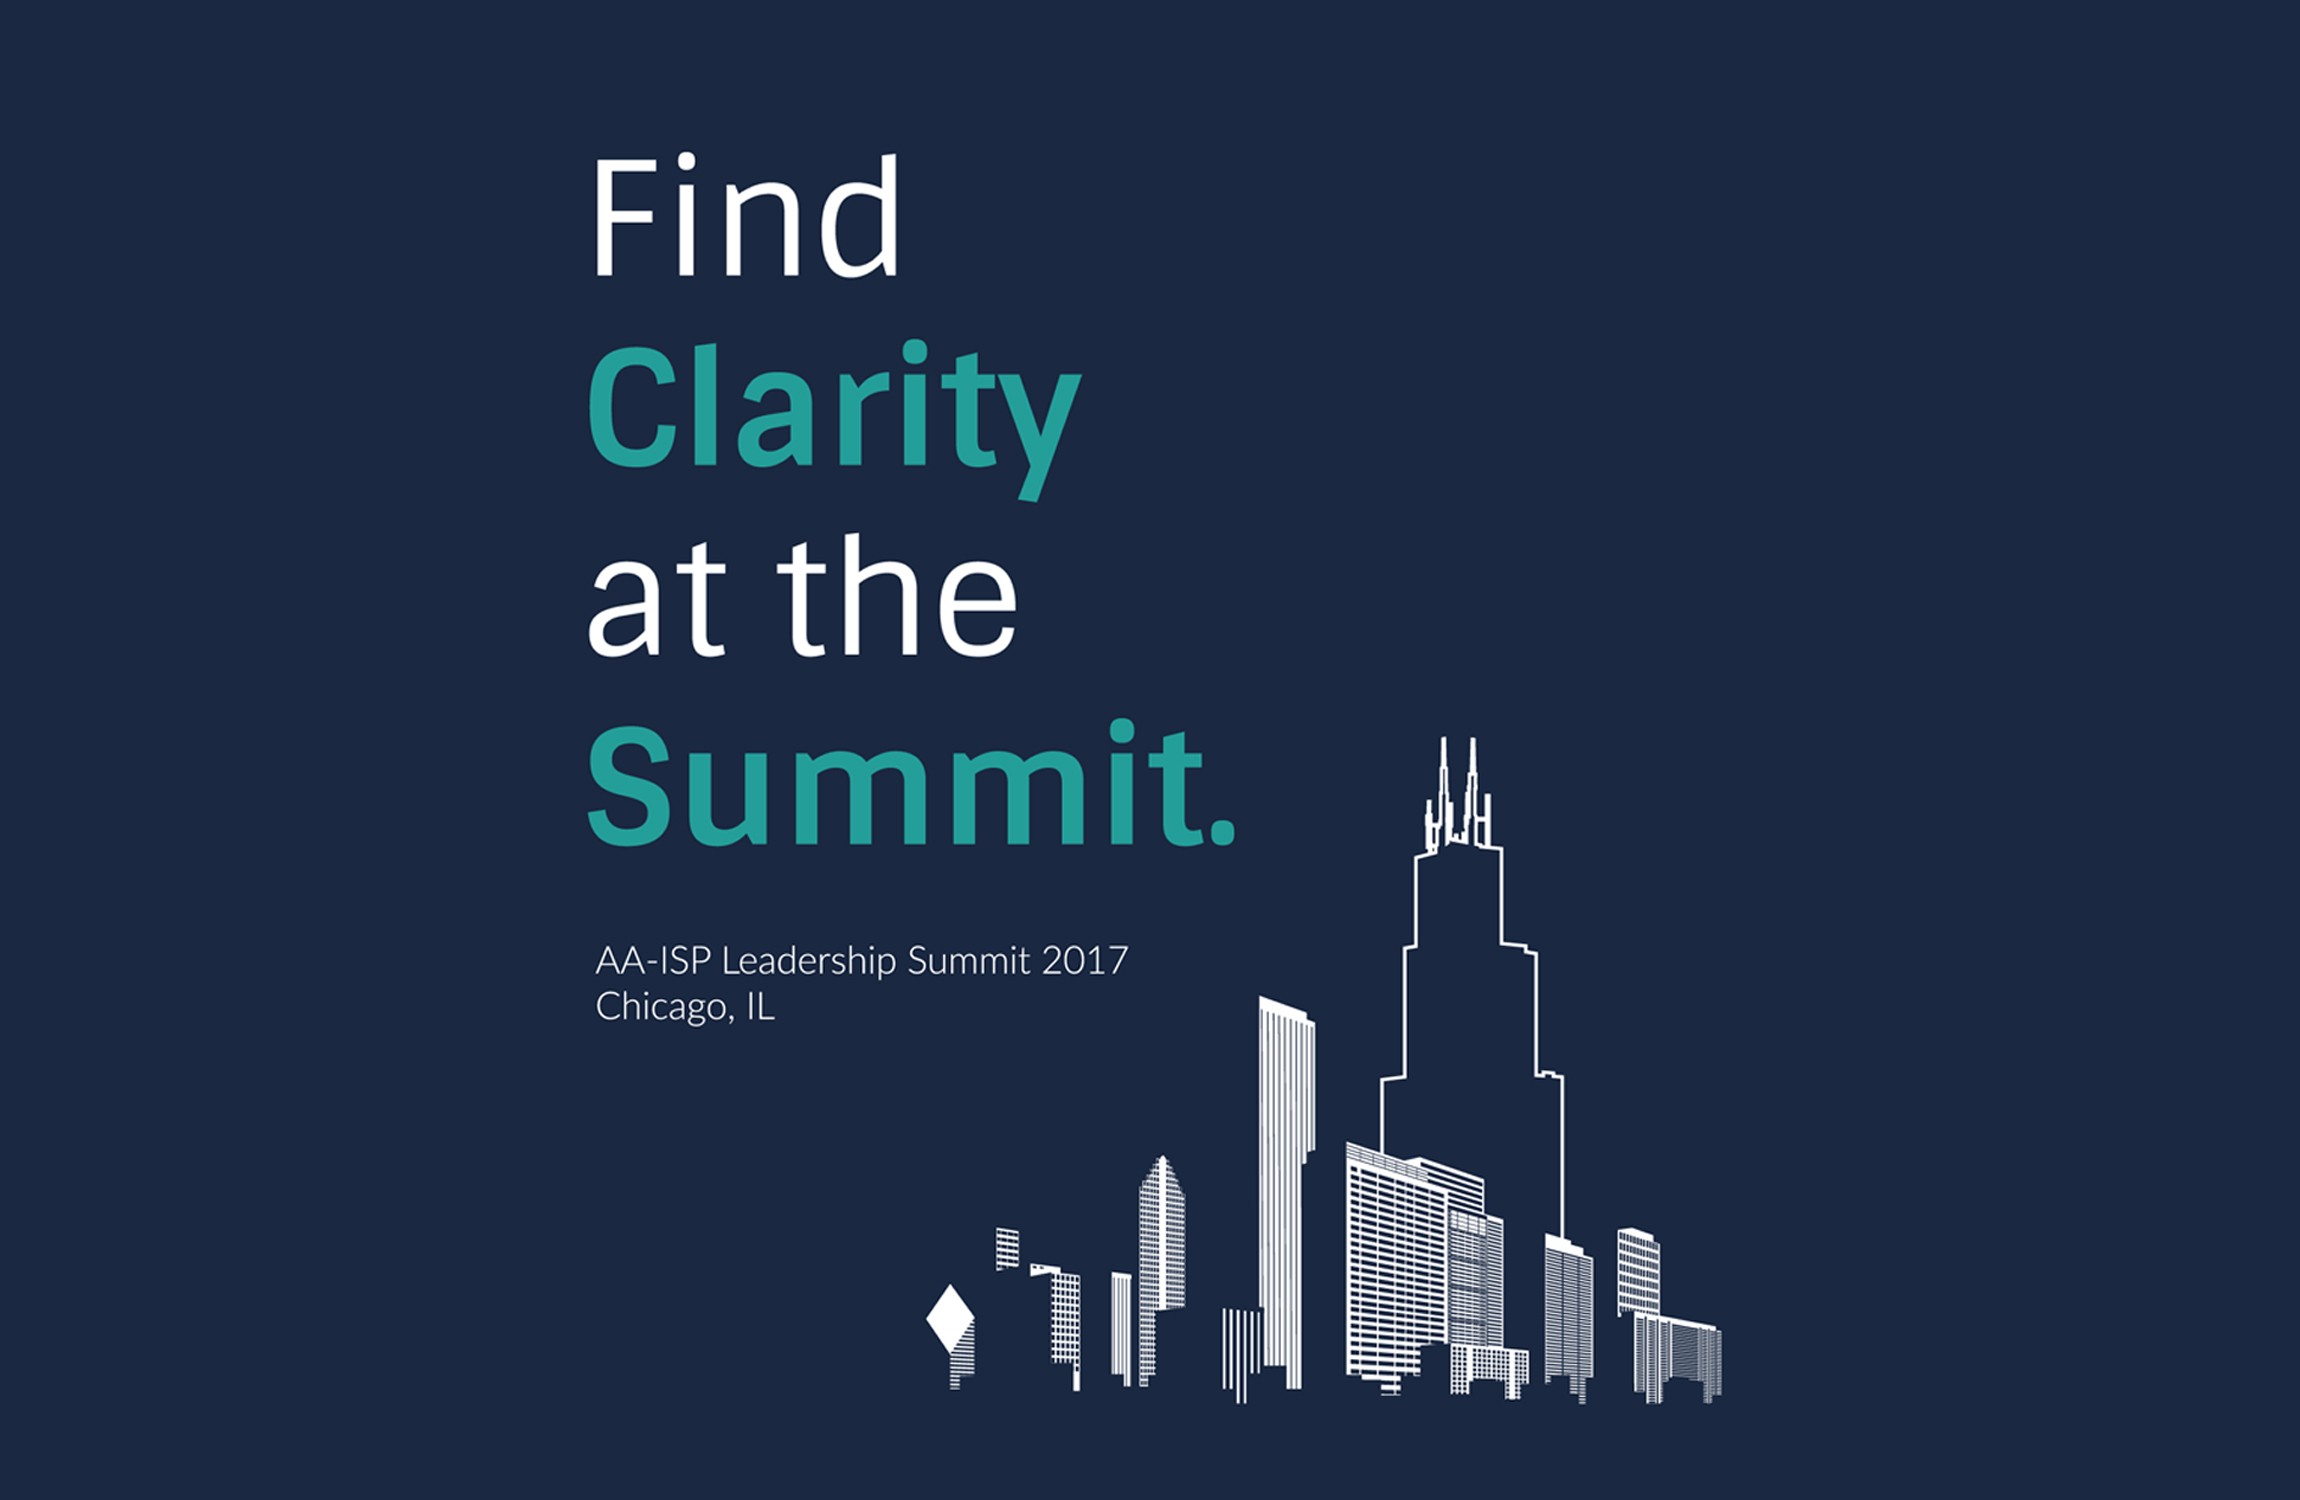 AA-ISP Leadership Summit 2017